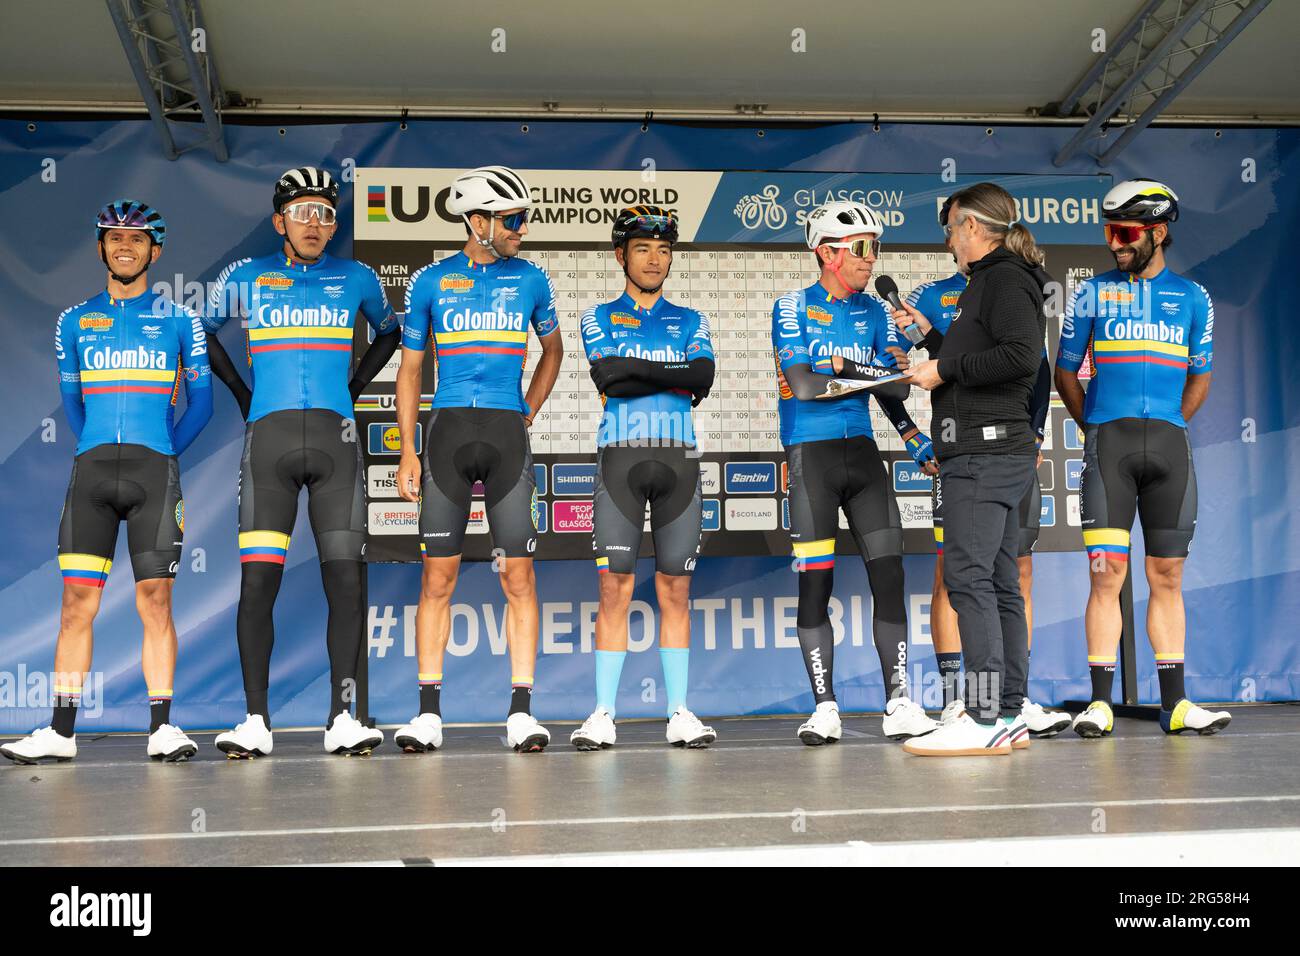 Team Colombia auf die Bühne, um sich vor der Elite Men's Road Race UCI World Championships in Edinbugh, Schottland, anzumelden Stockfoto